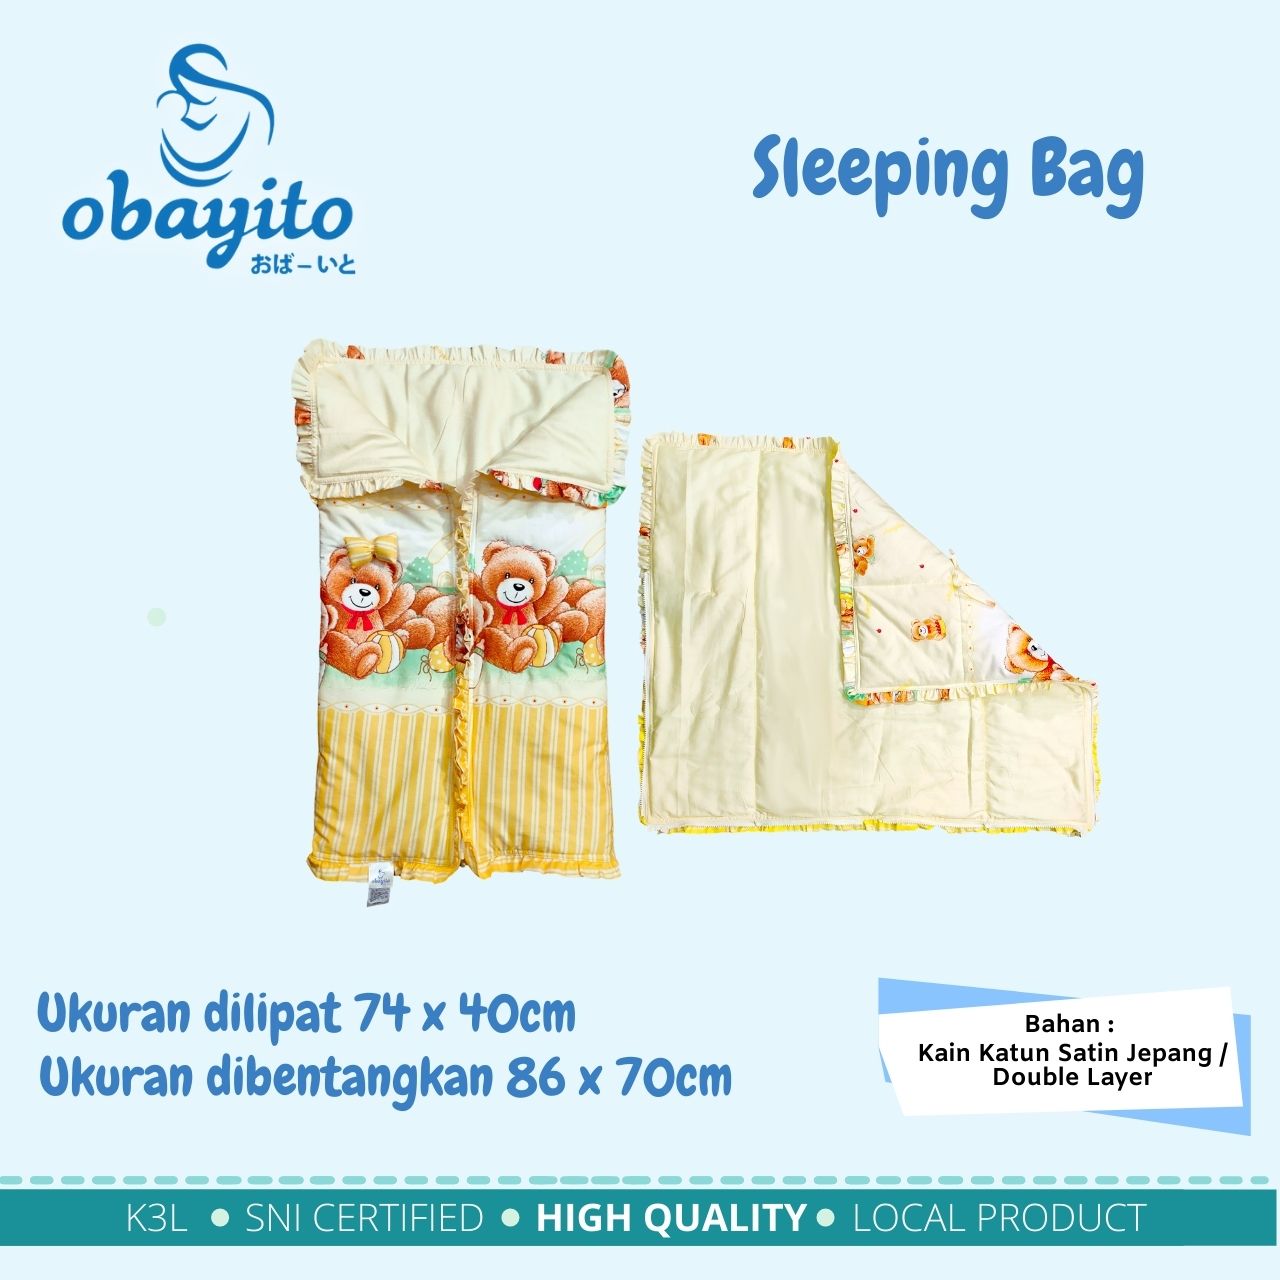 Ukuran sleeping bag dari obayito terbaik